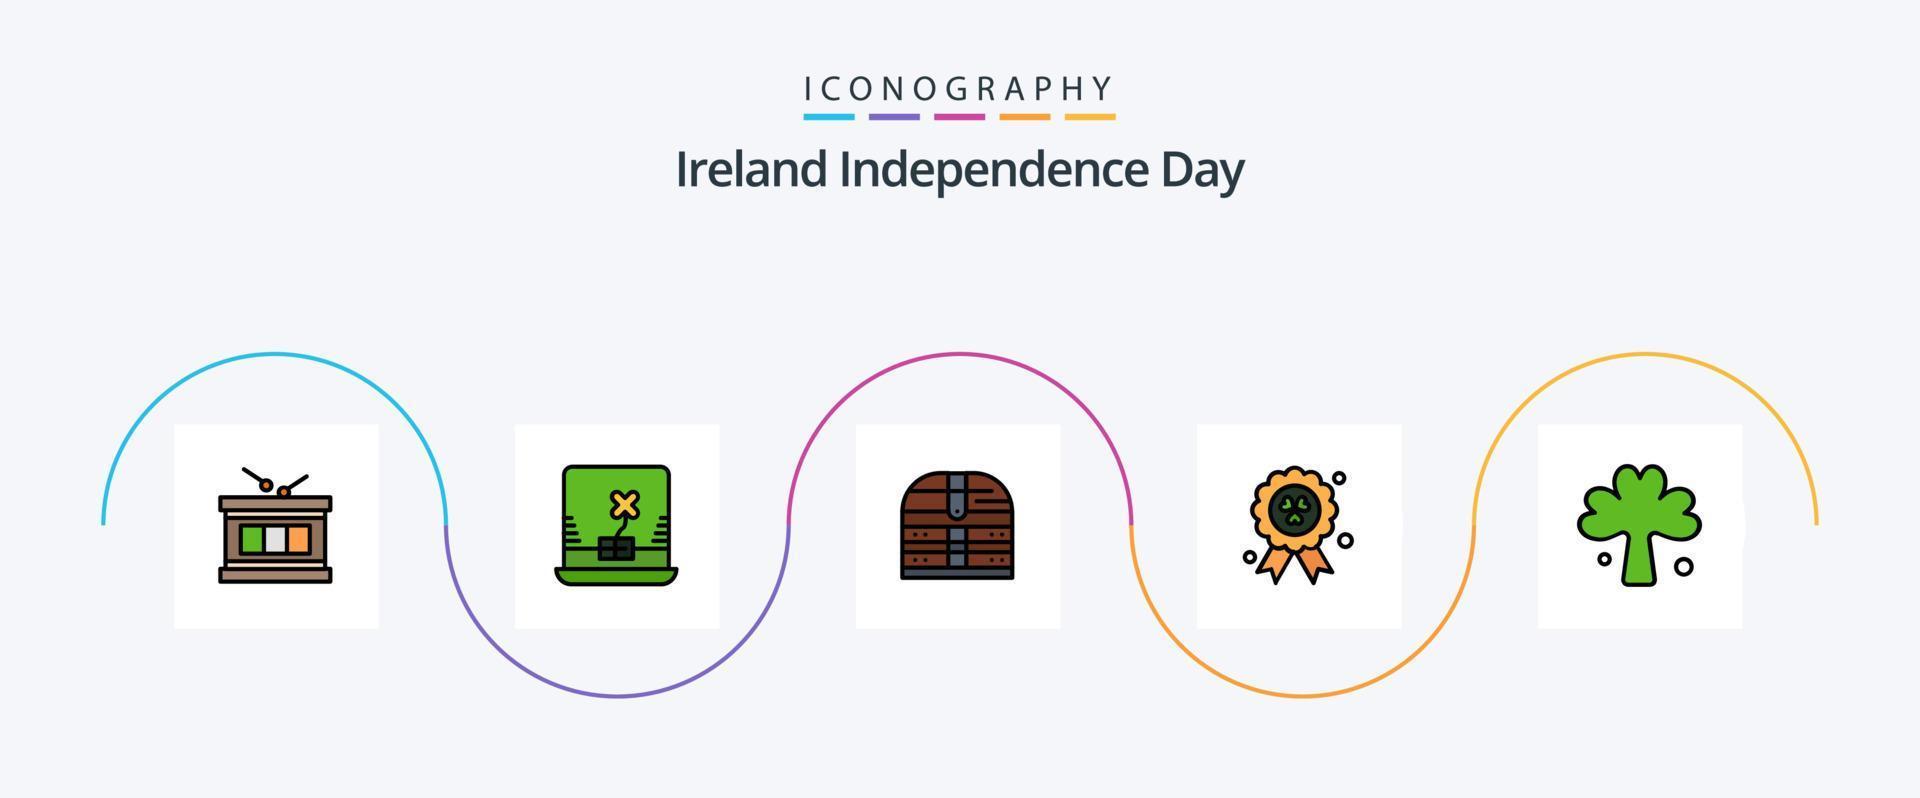 la línea del día de la independencia de irlanda llenó el paquete de iconos planos 5, incluido el irlandés. verde. dinero. trébol. madel vector